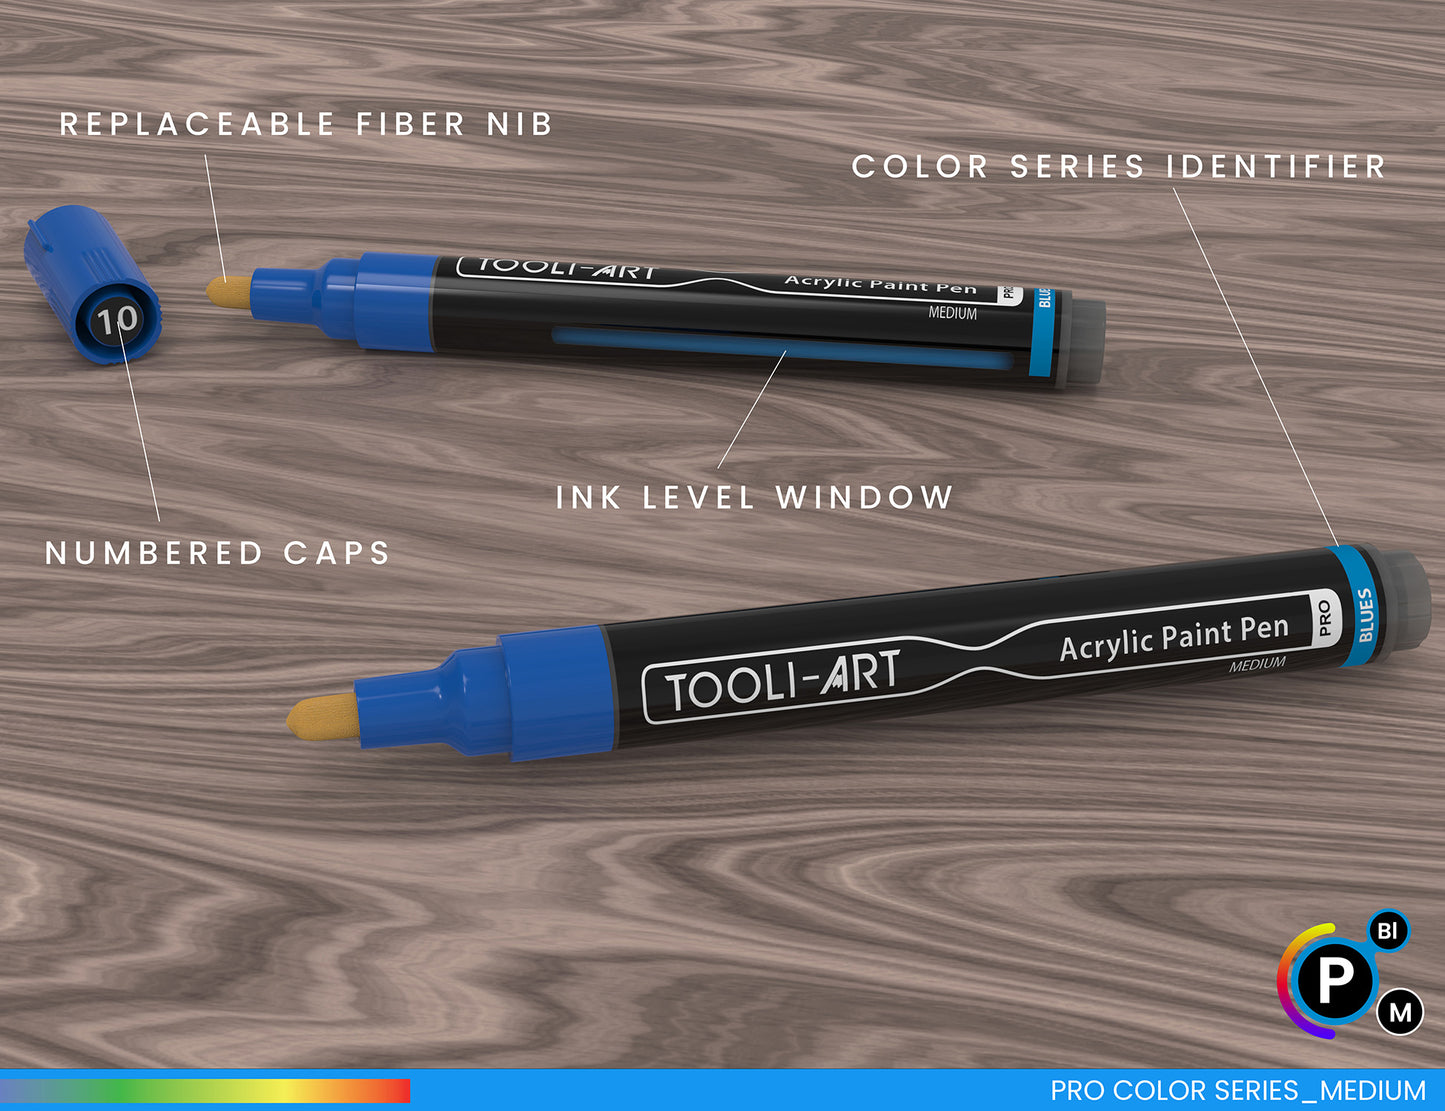 22 Acrylic Paint Pens (BLUES & PURPLES) Pro Color Series Set (3mm MEDIUM)